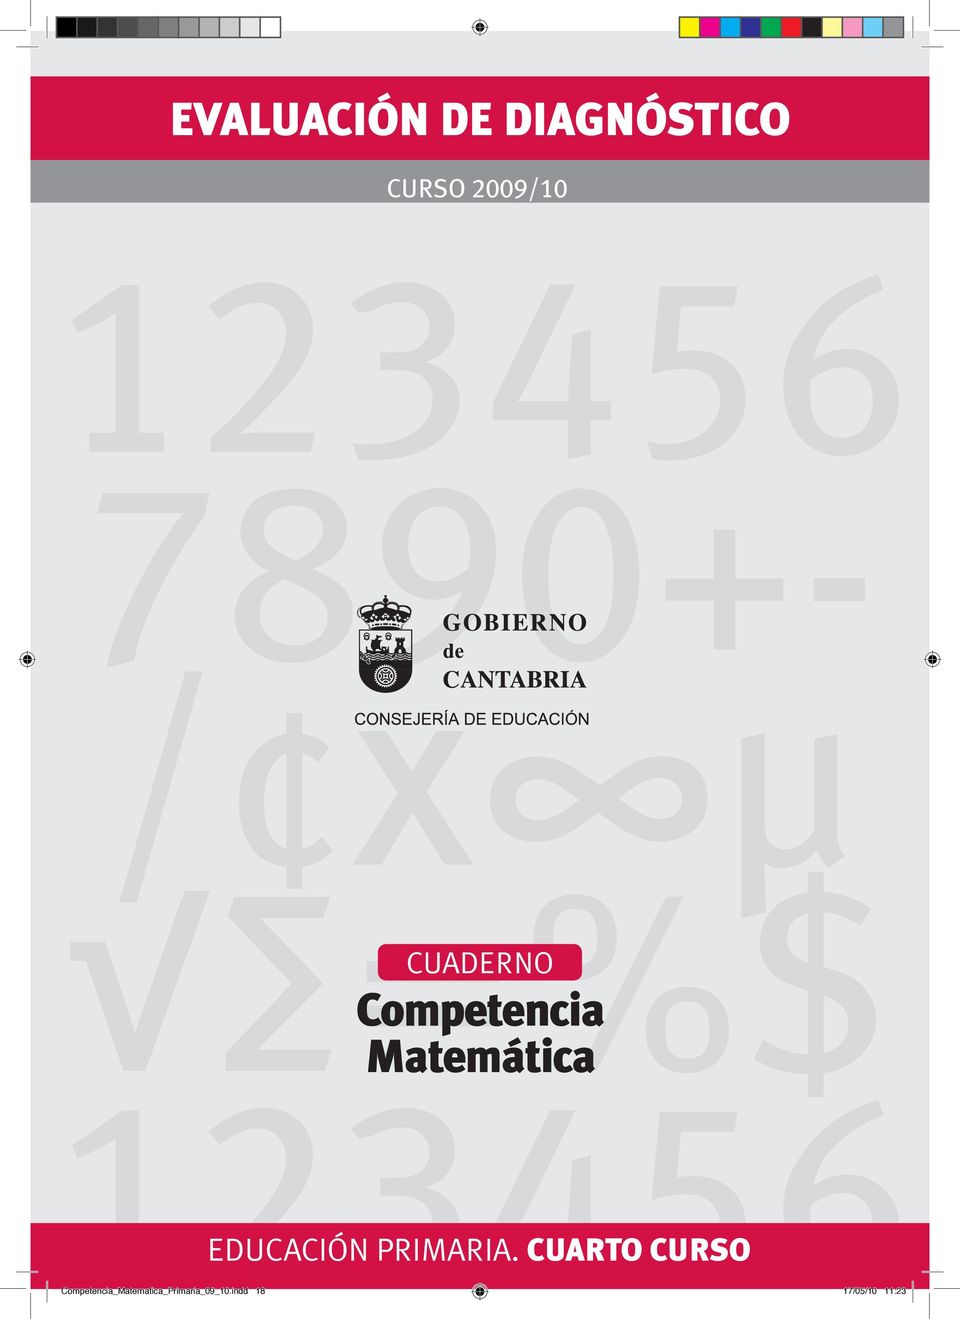 2009/10 123456 7890+- / x µ =%$ 123456 CUADERNO Competencia Matemática